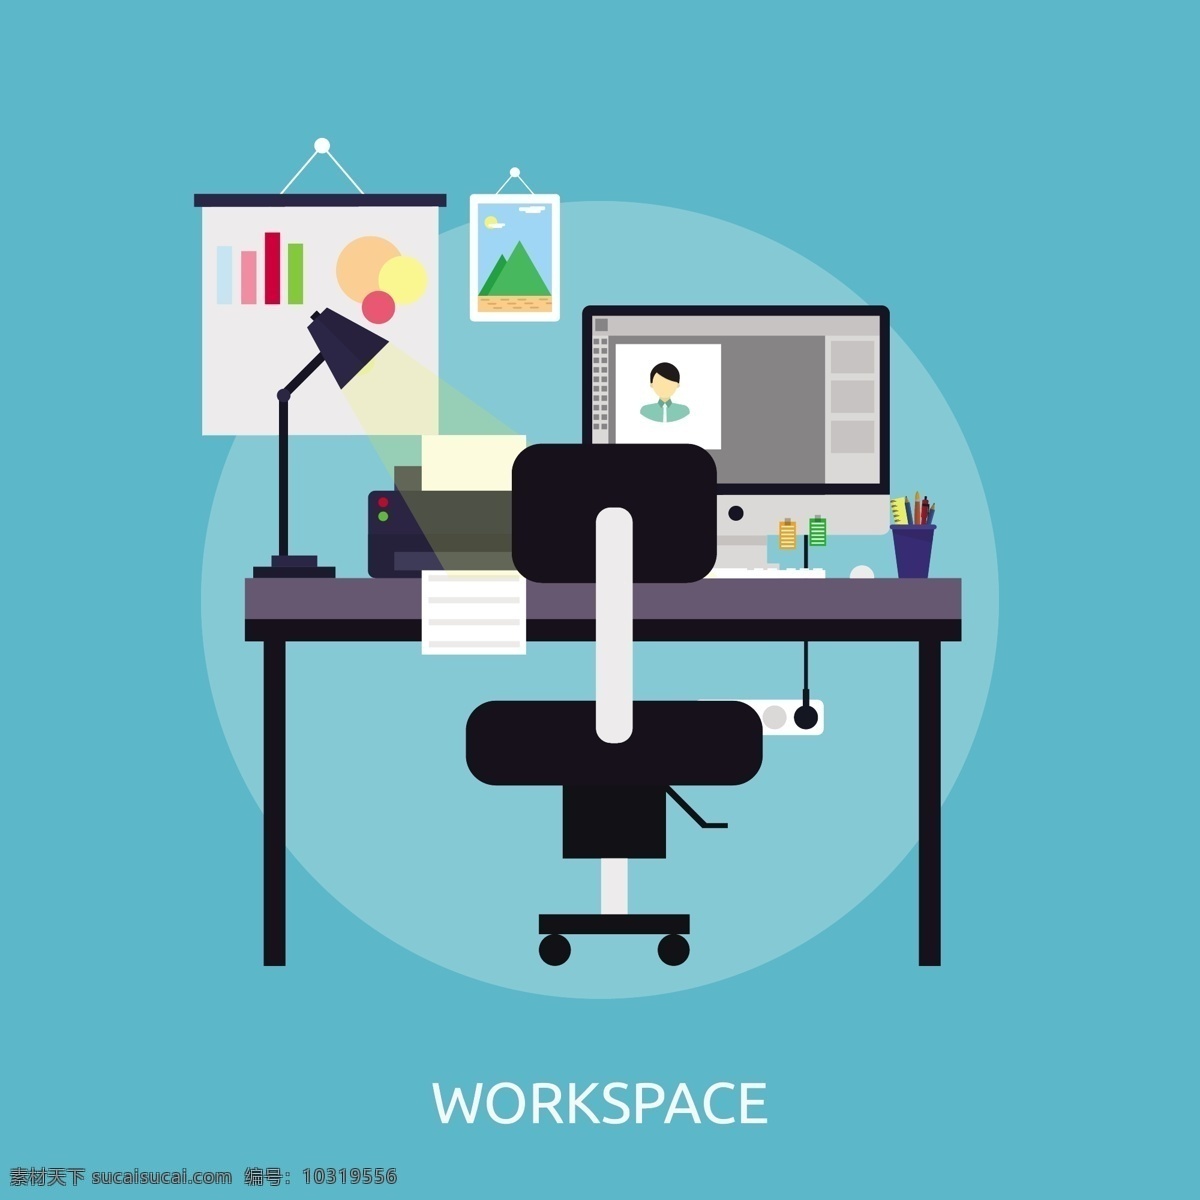 工作区 背景 电脑 办公室 墙纸 颜色 台灯 平板 书桌 彩色背景 椅子 平面设计 工作场所 办公桌 多彩的背景 背景色 彩色